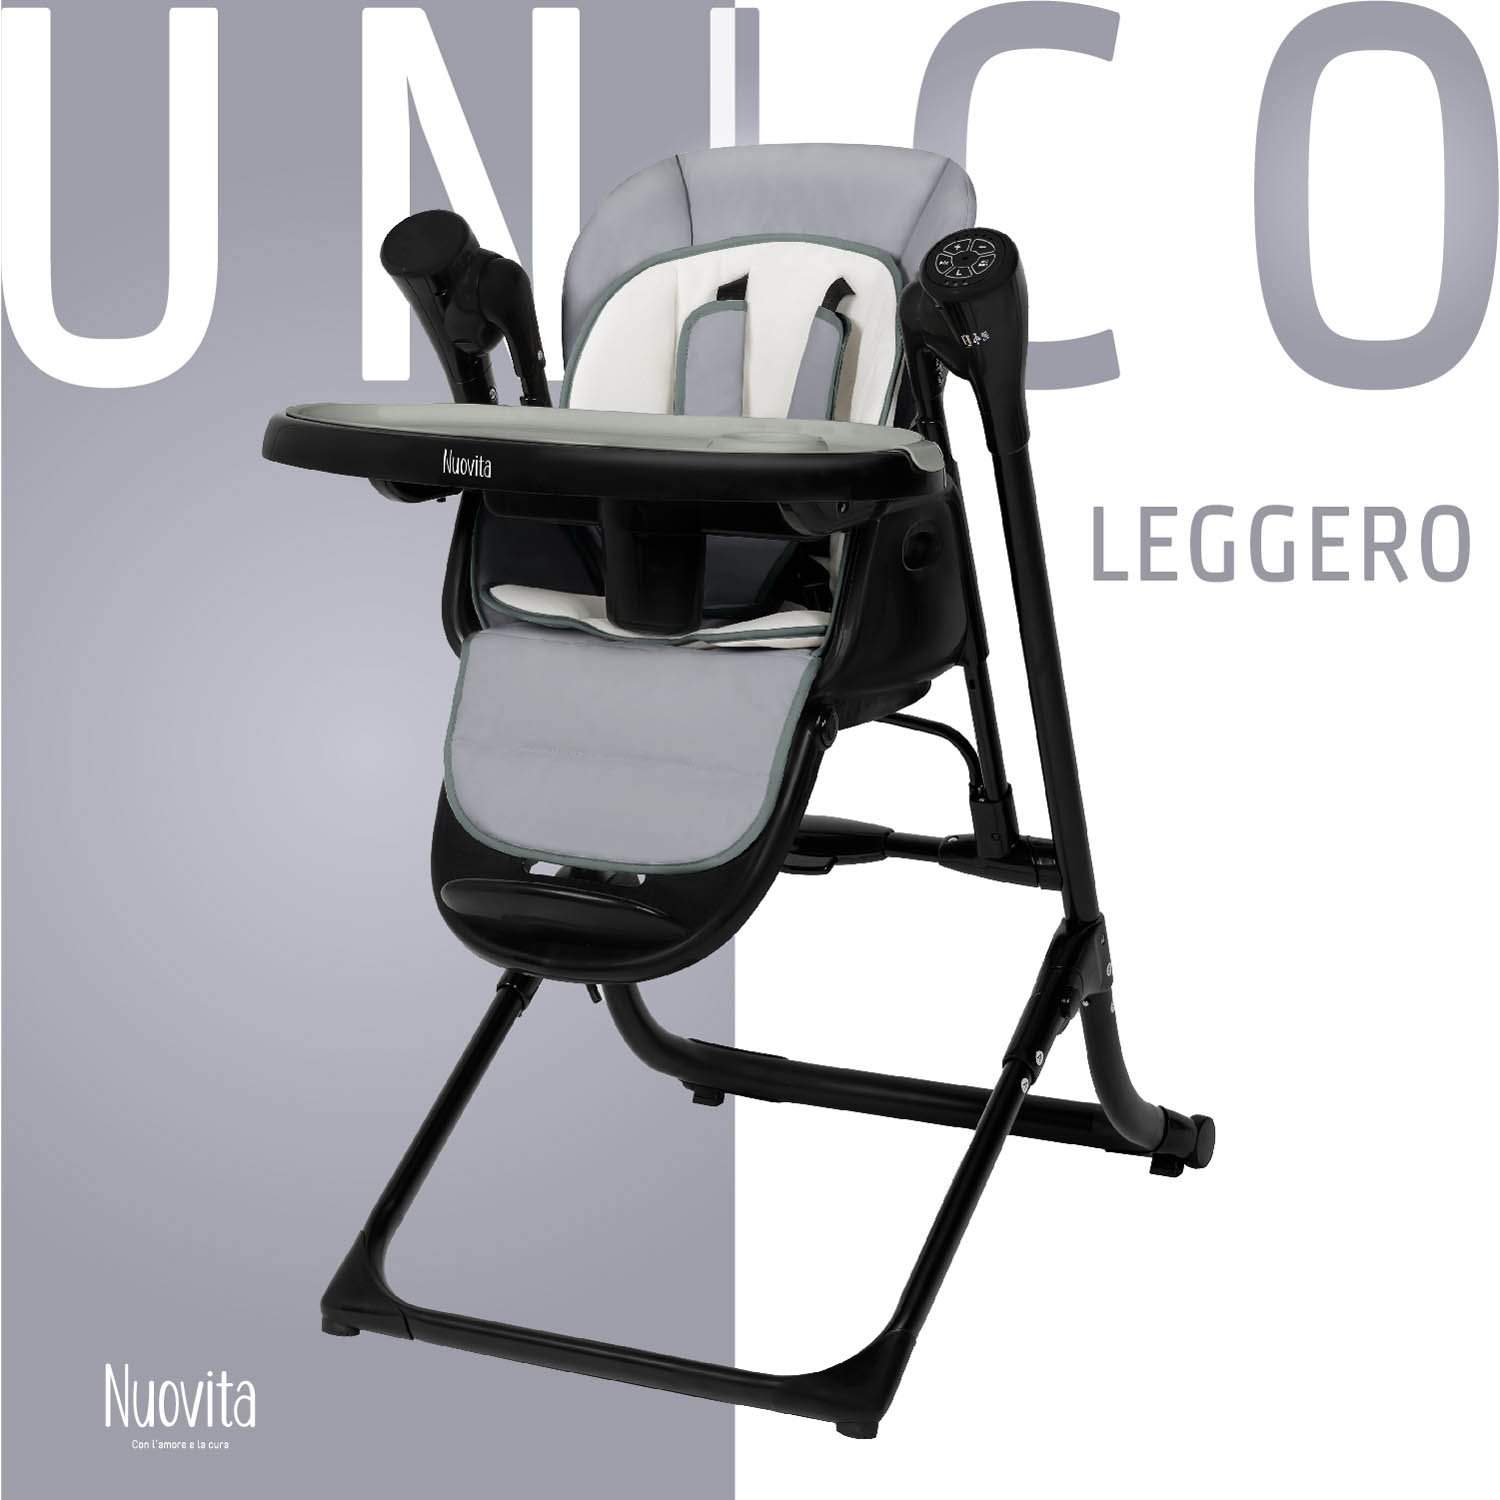 Стульчик для кормления с электронной функцией качения Nuovita Unico Leggero Nero серый стульчик для кормления nuovita с электронным устройством качения unico lux